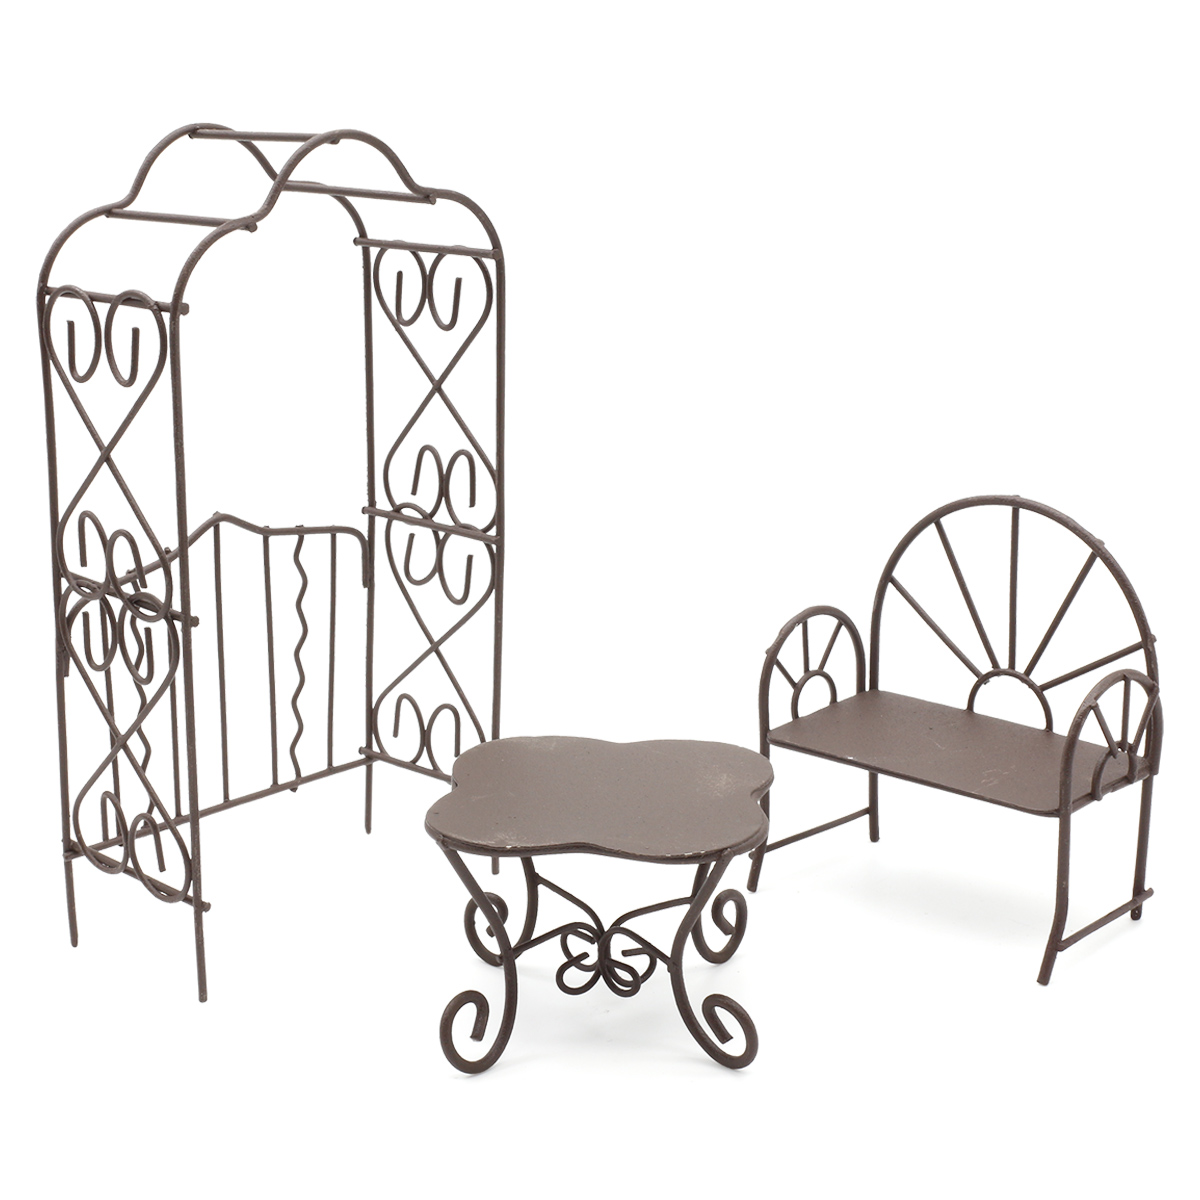 Мебель для куклы, 3 предмета (стол, скамейка, арка), Astra&Craft